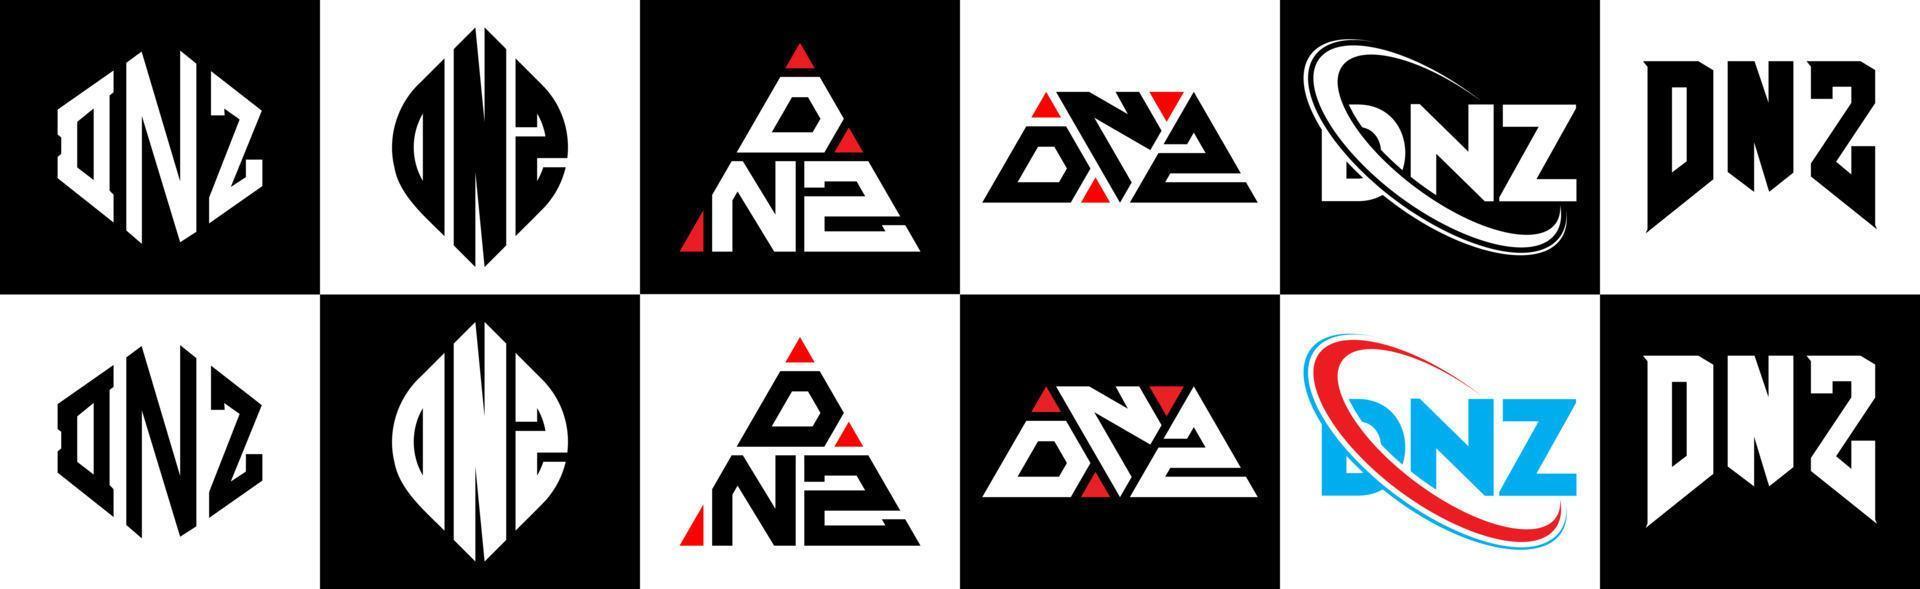 design de logotipo de letra dnz em estilo seis. dnz polígono, círculo, triângulo, hexágono, estilo plano e simples com logotipo de carta de variação de cor preto e branco definido em uma prancheta. dnz logotipo minimalista e clássico vetor